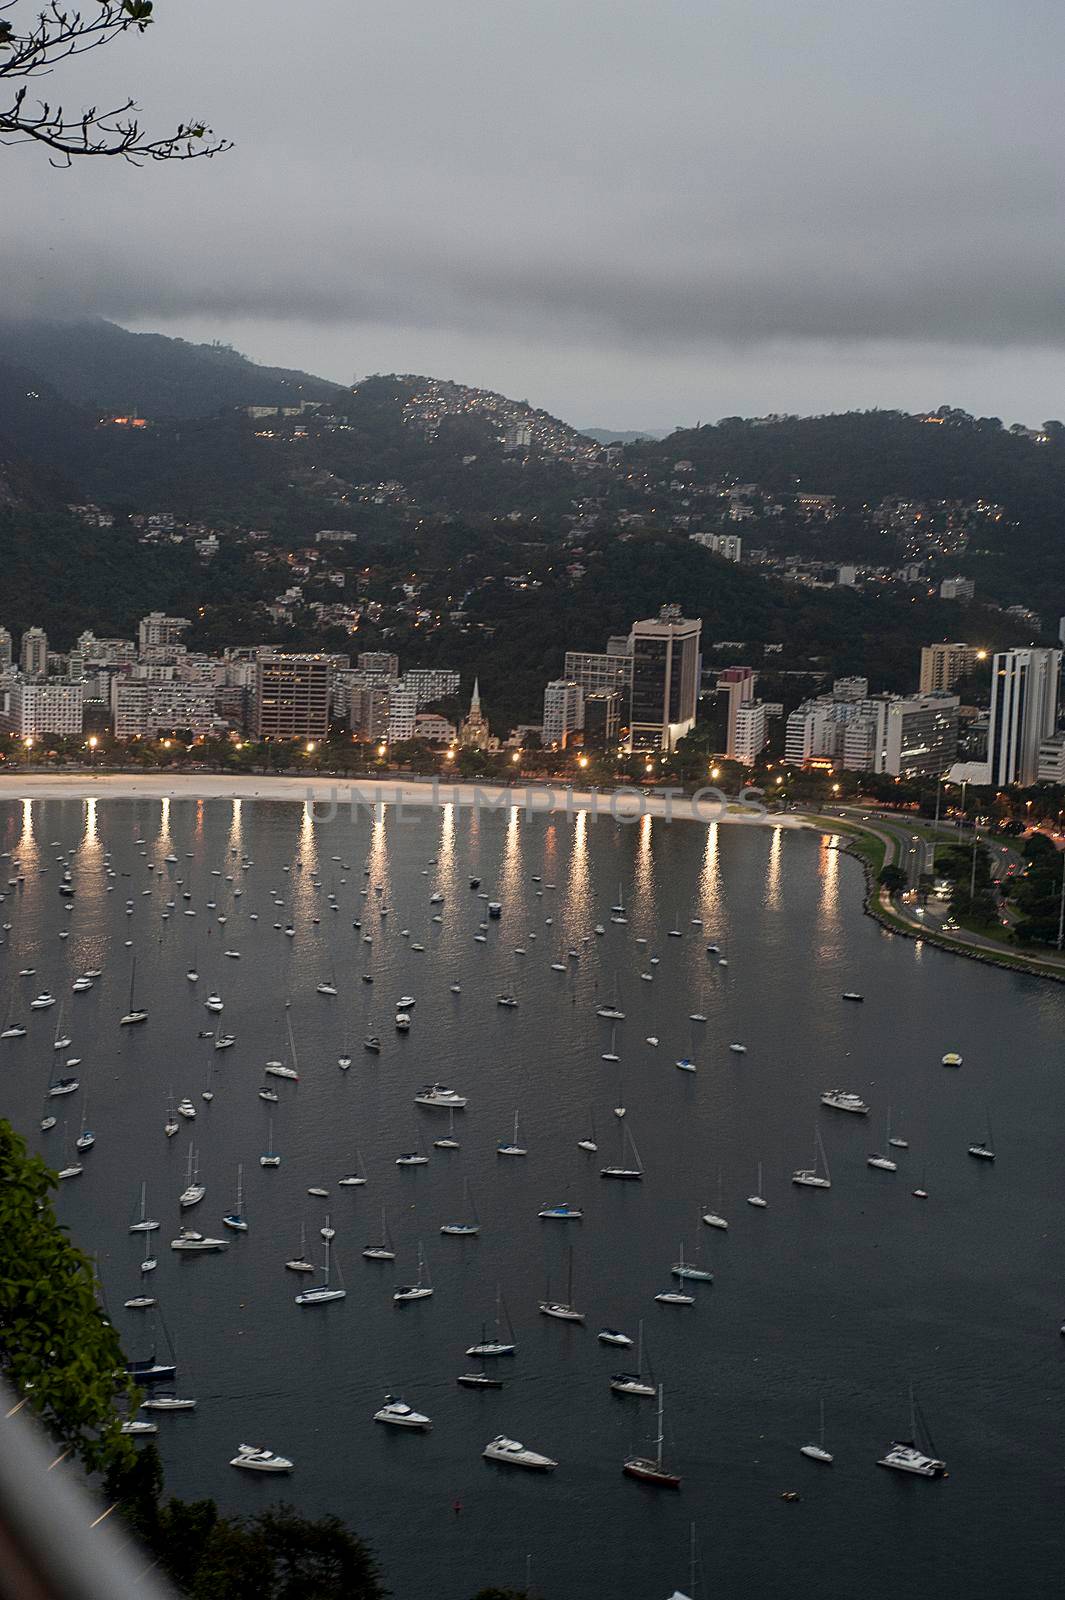 Panoramic view of Rio de Janeiro with playa Vermelha